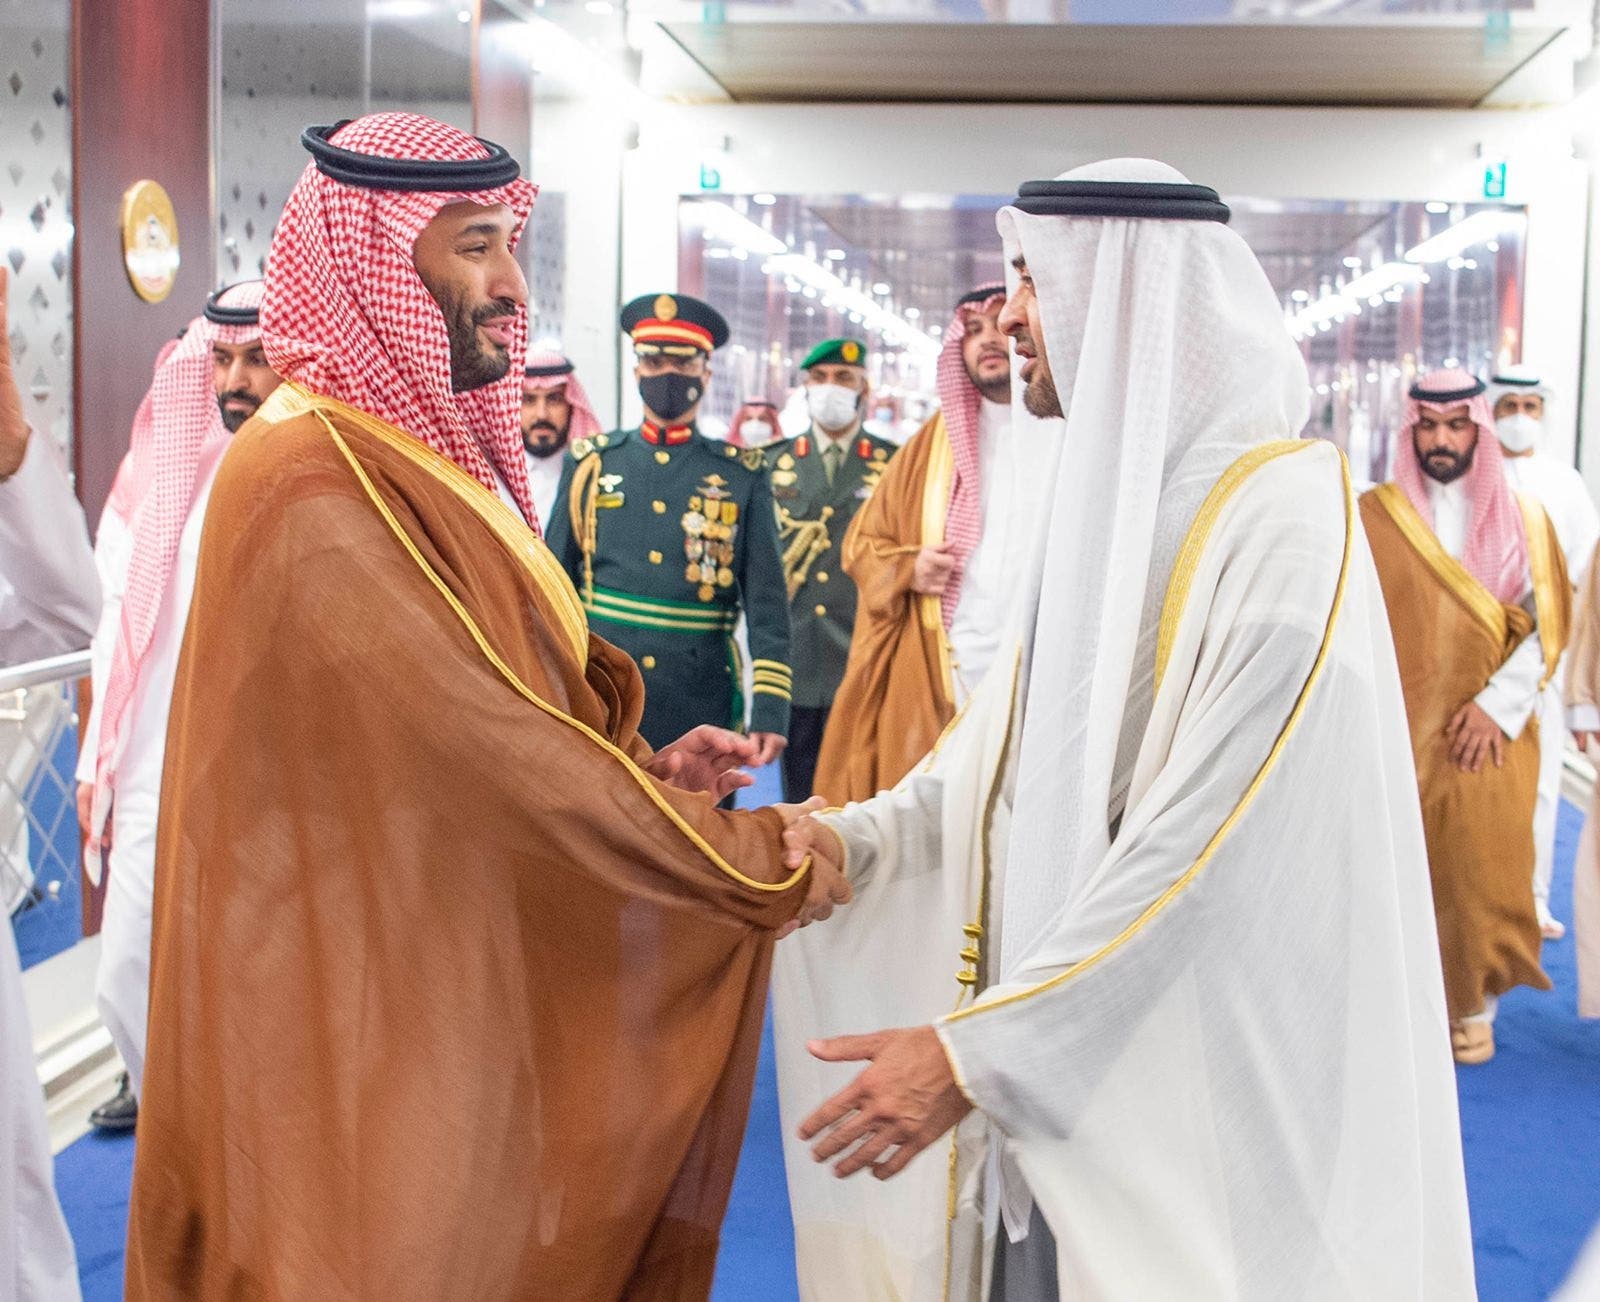 Prince Mohammed bin Salman and Sheikh Mohammed bin Zayed in Abu Dhabi - UAE